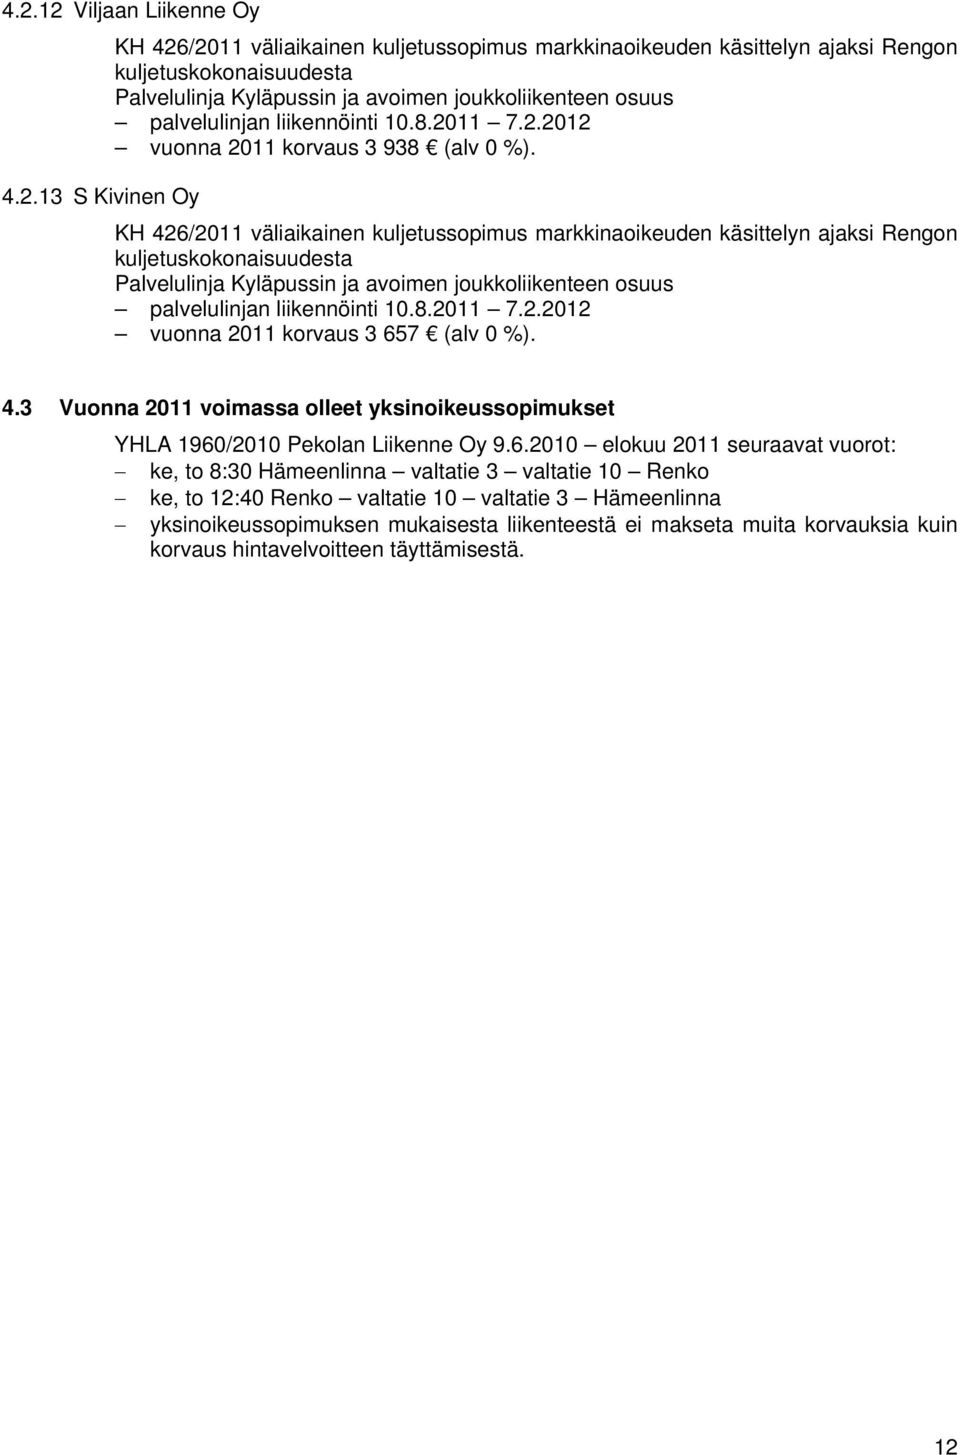 11 7.2.2012 vuonna 2011 korvaus 3 938 (alv 0 %). 4.2.13 S Kivinen Oy KH 426/2011 väliaikainen kuljetussopimus markkinaoikeuden käsittelyn ajaksi Rengon kuljetuskokonaisuudesta Palvelulinja Kyläpussin ja avoimen joukkoliikenteen osuus 11 7.